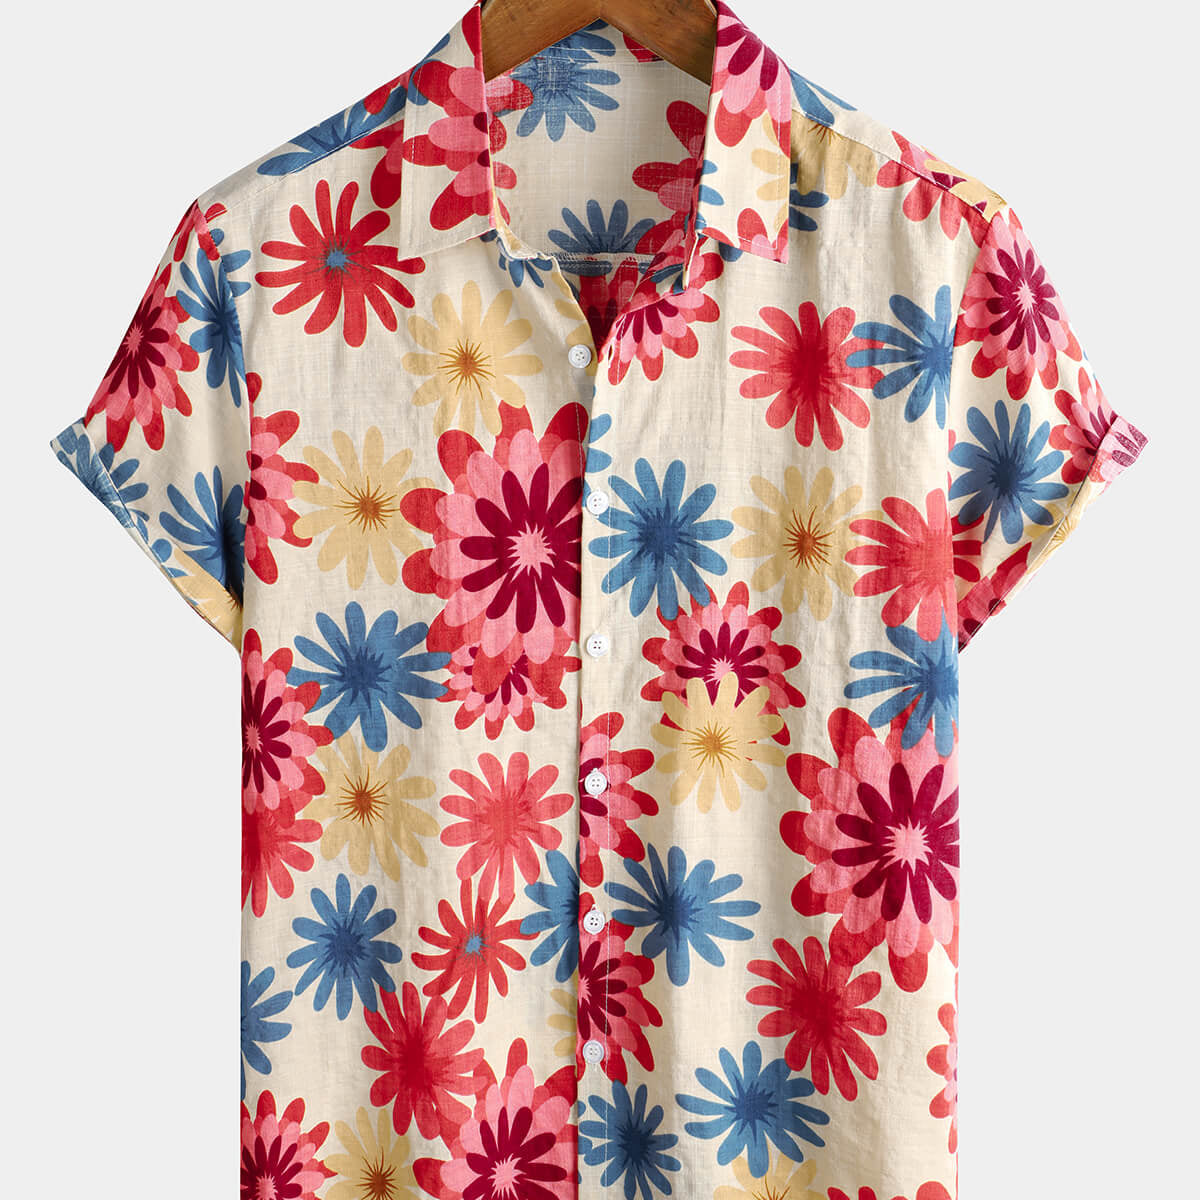 Camisa hawaiana de manga corta con botones para hombre, diseño floral de algodón, margarita, verano, playa, vacaciones